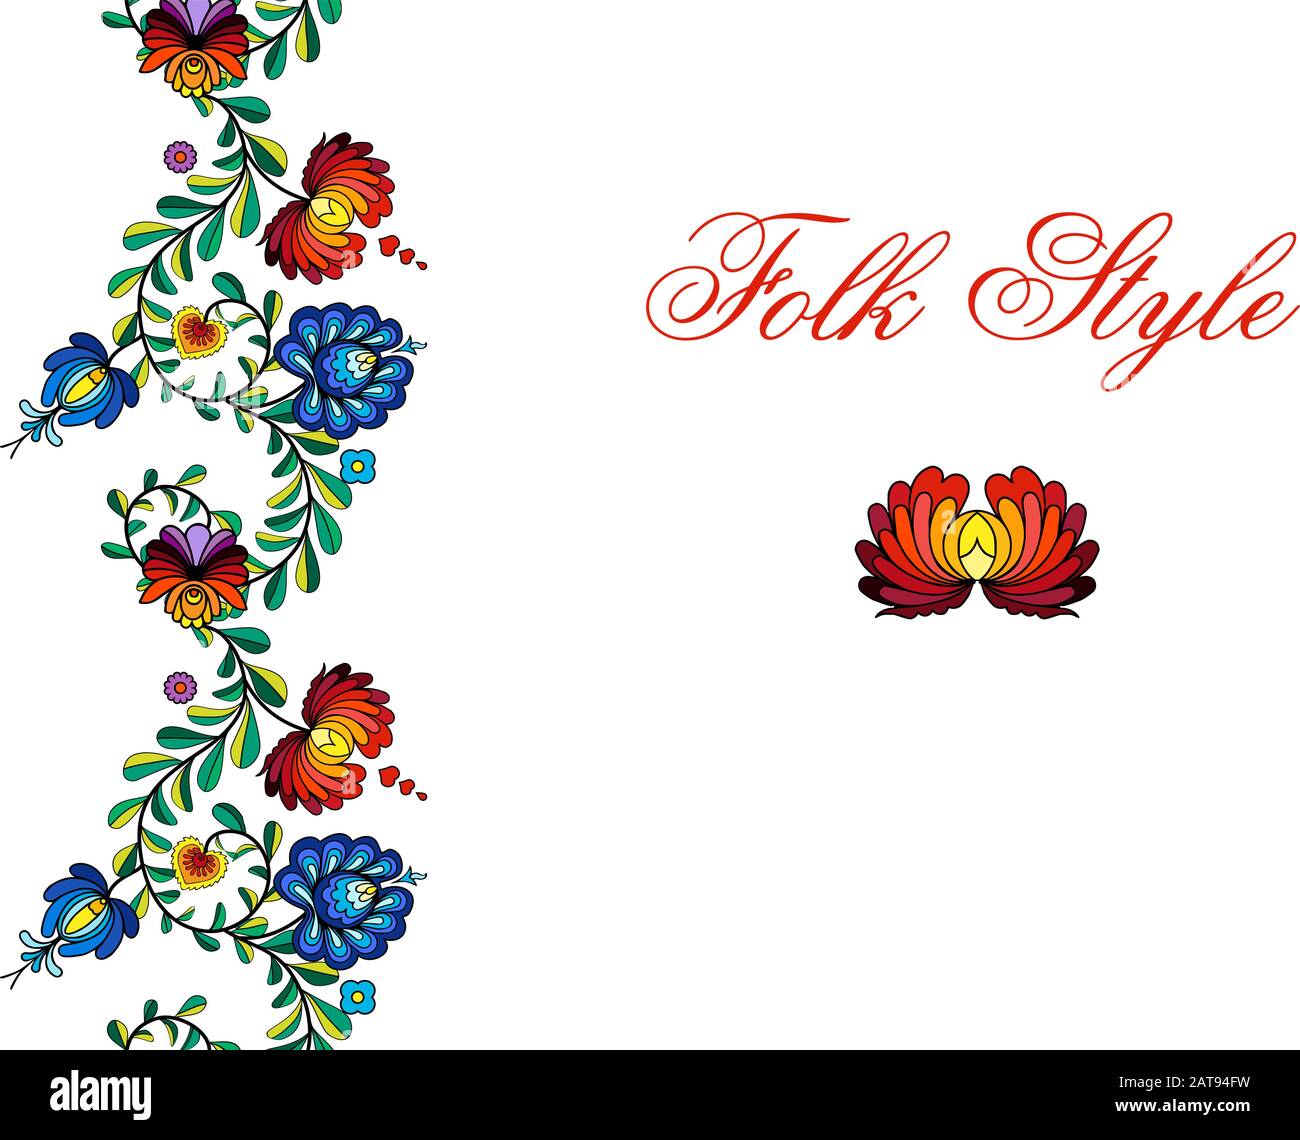 Ornement floral ethnique - Frièze fleur de style folklorique russe - vignette décorative vectorielle Illustration de Vecteur